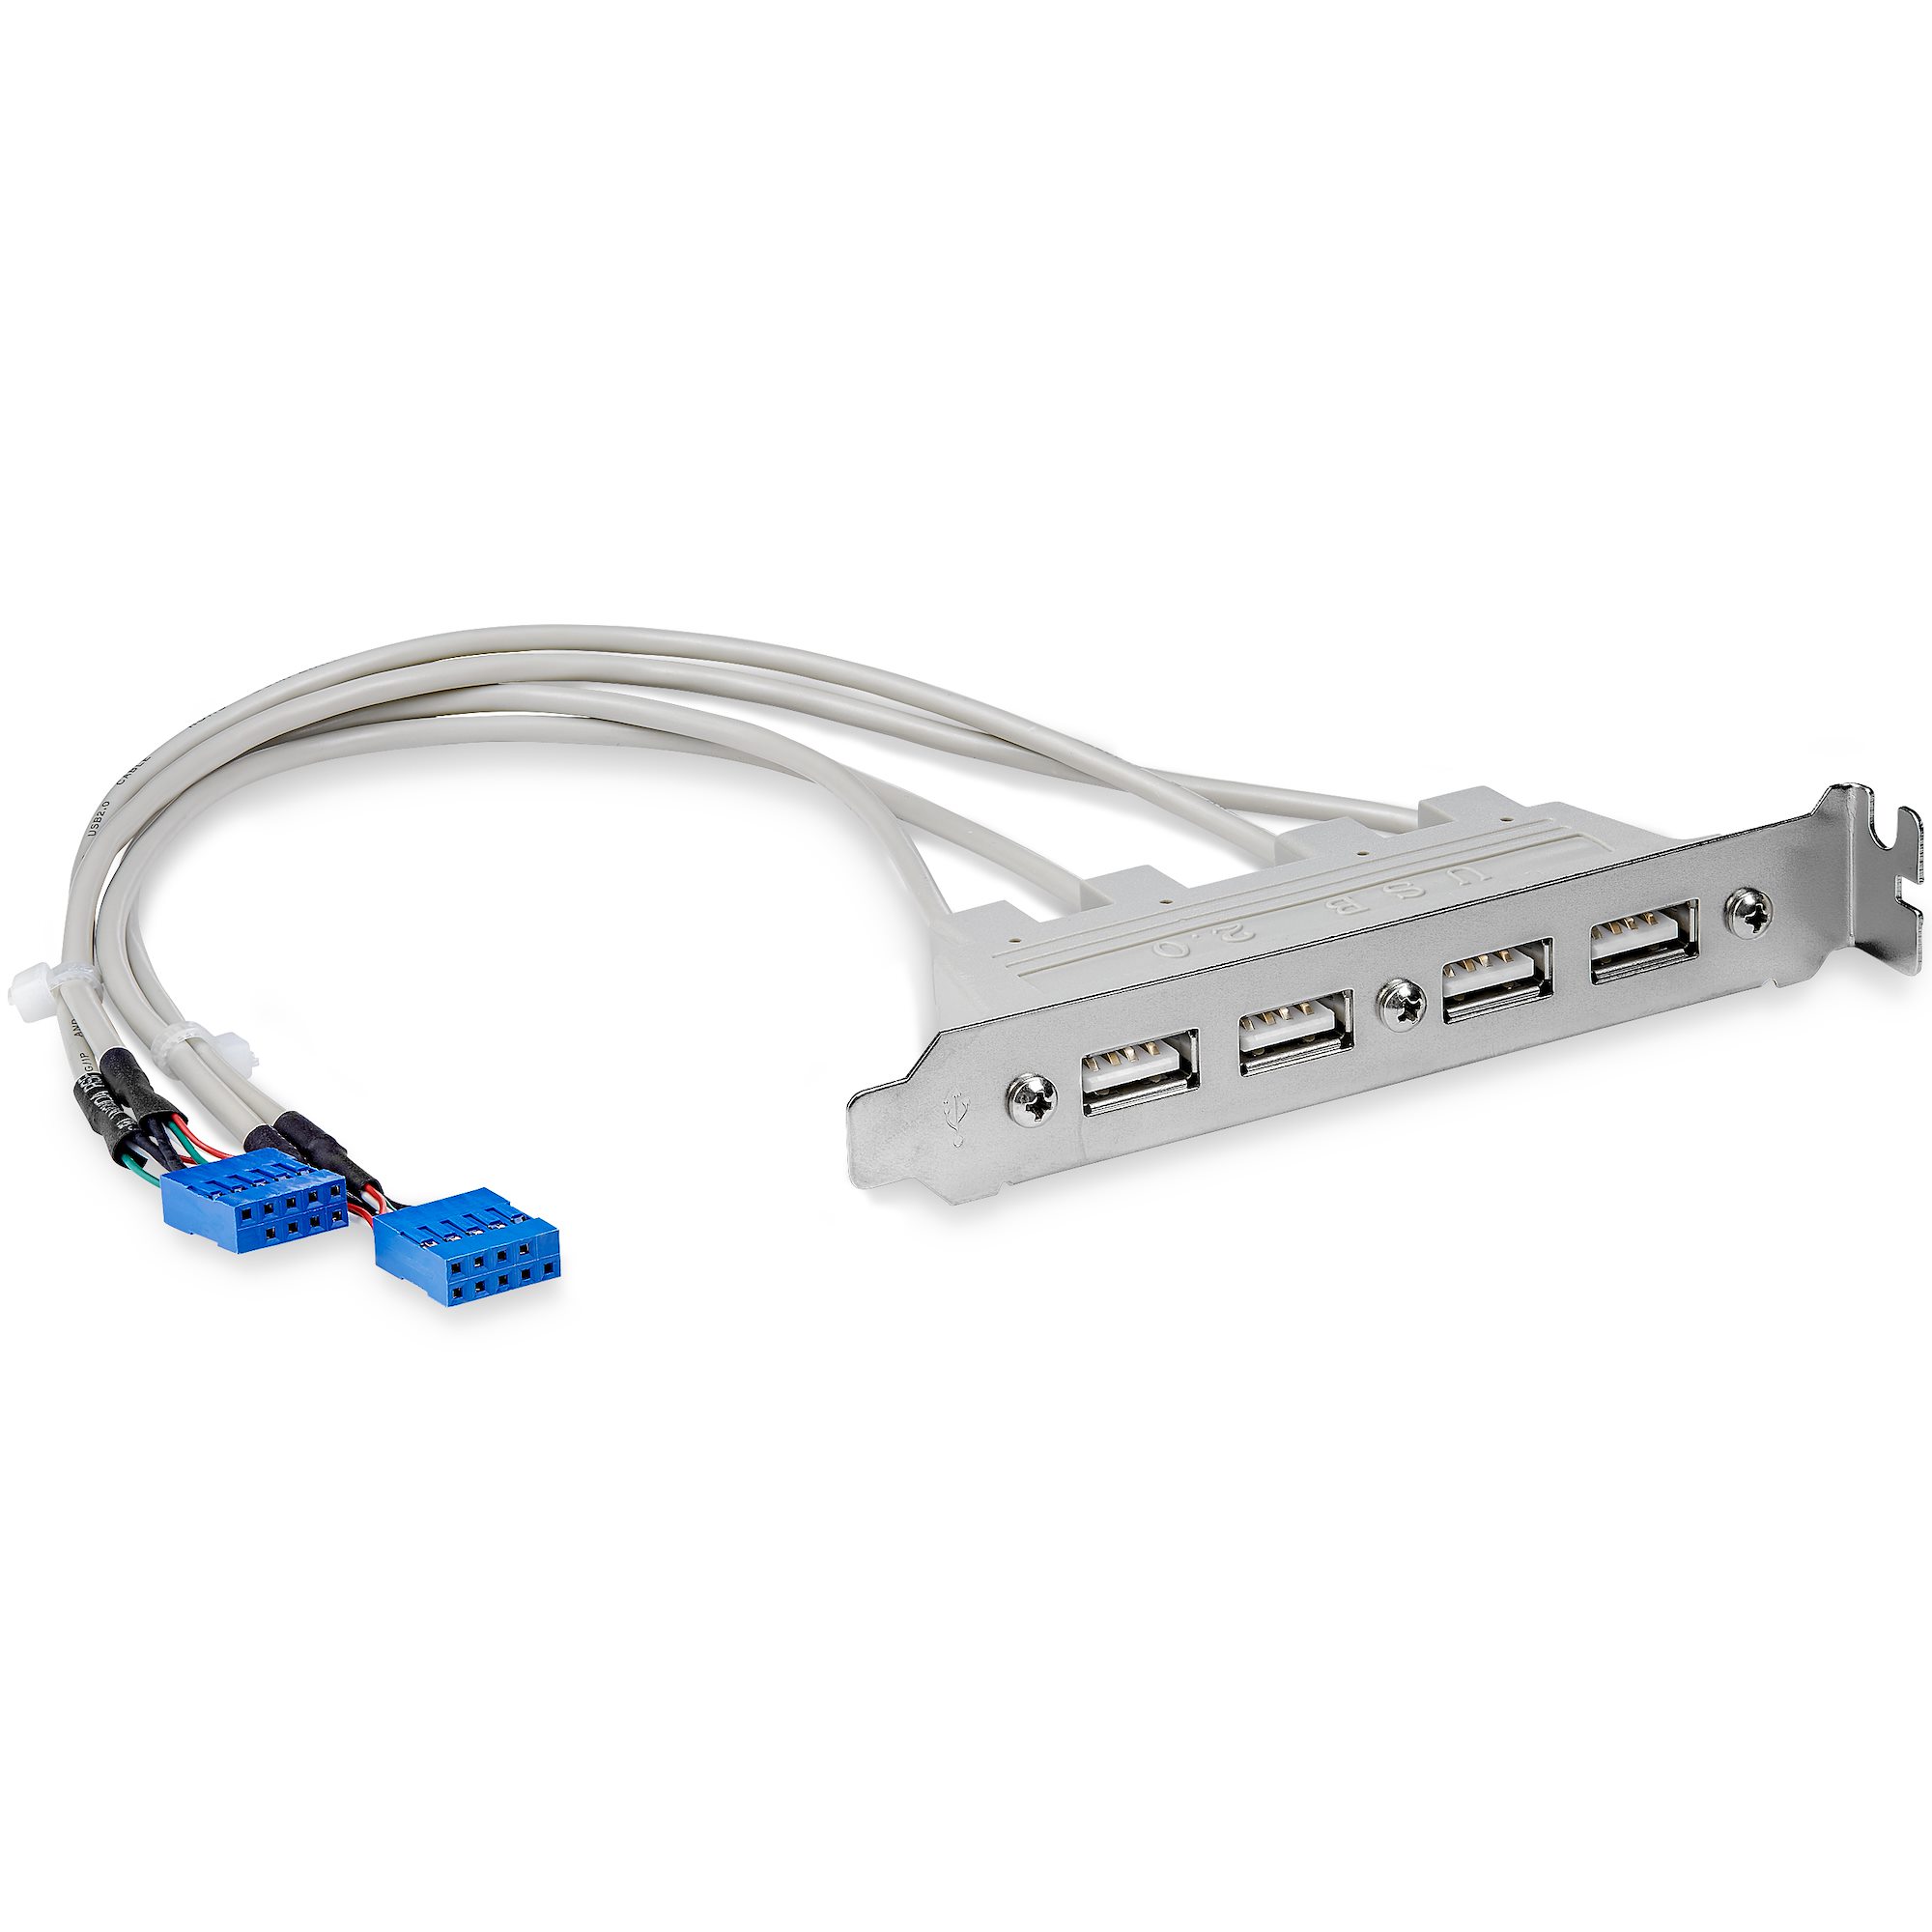 M/Bピンヘッダー接続 IDC 10ピン x2 USB x4 変換ケーブル 内部USBケーブル  パネルマウントUSBケーブル  日本